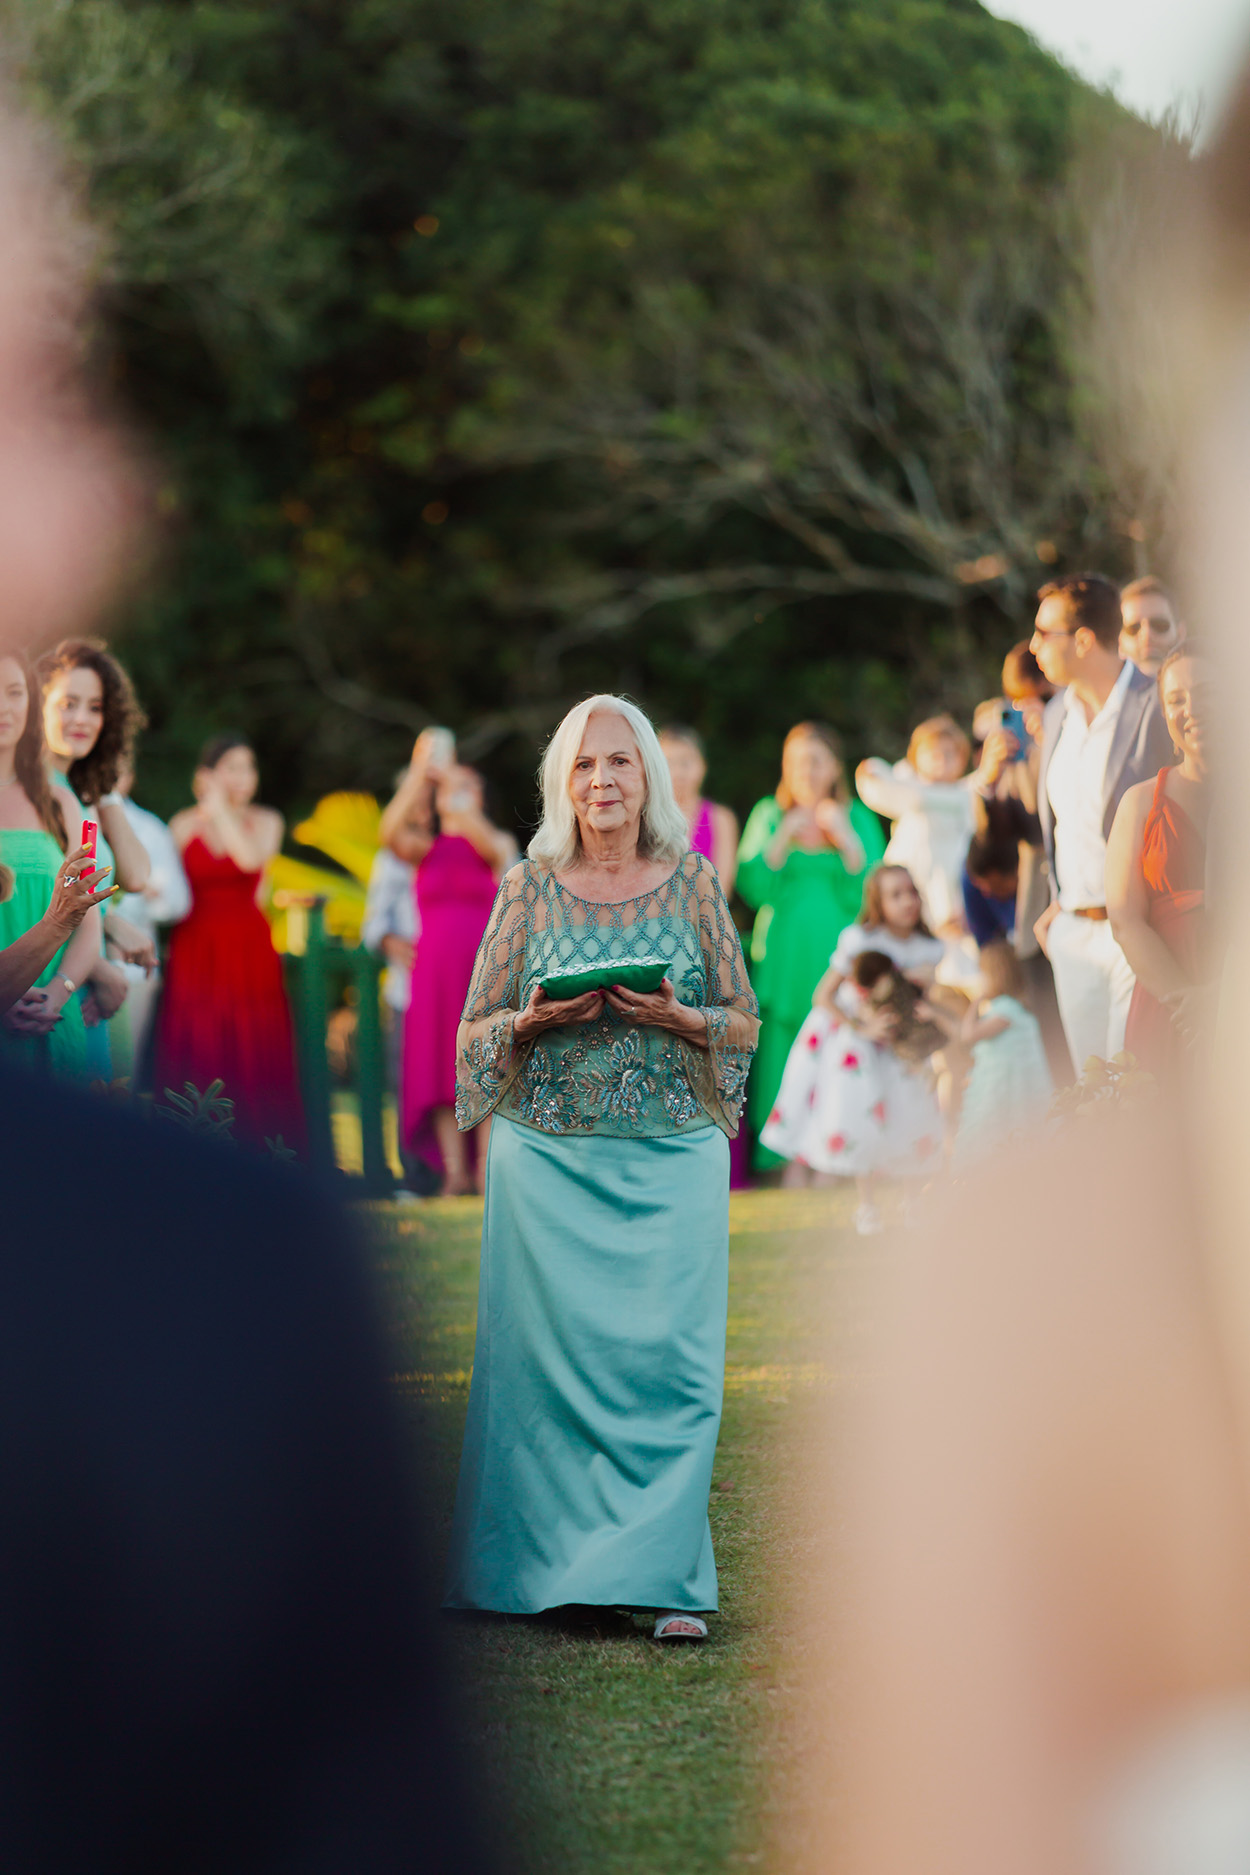 Senhora com vestido azul turquesa carregando almofada com porta alianças